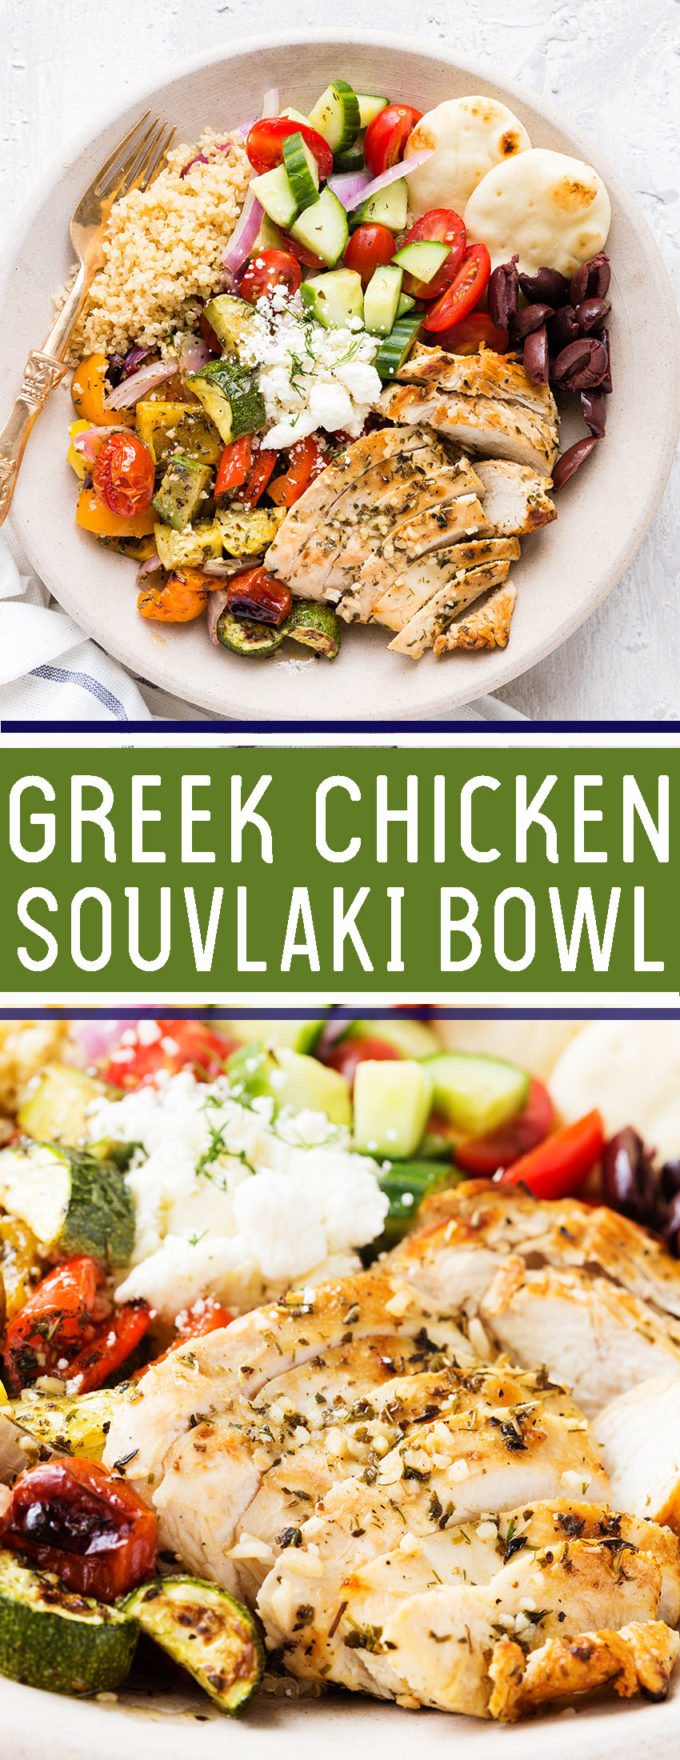 https://www.eazypeazymealz.com/wp-content/uploads/2018/09/Greek-Chicken-Souvlaki-Bowl-PIN.jpg